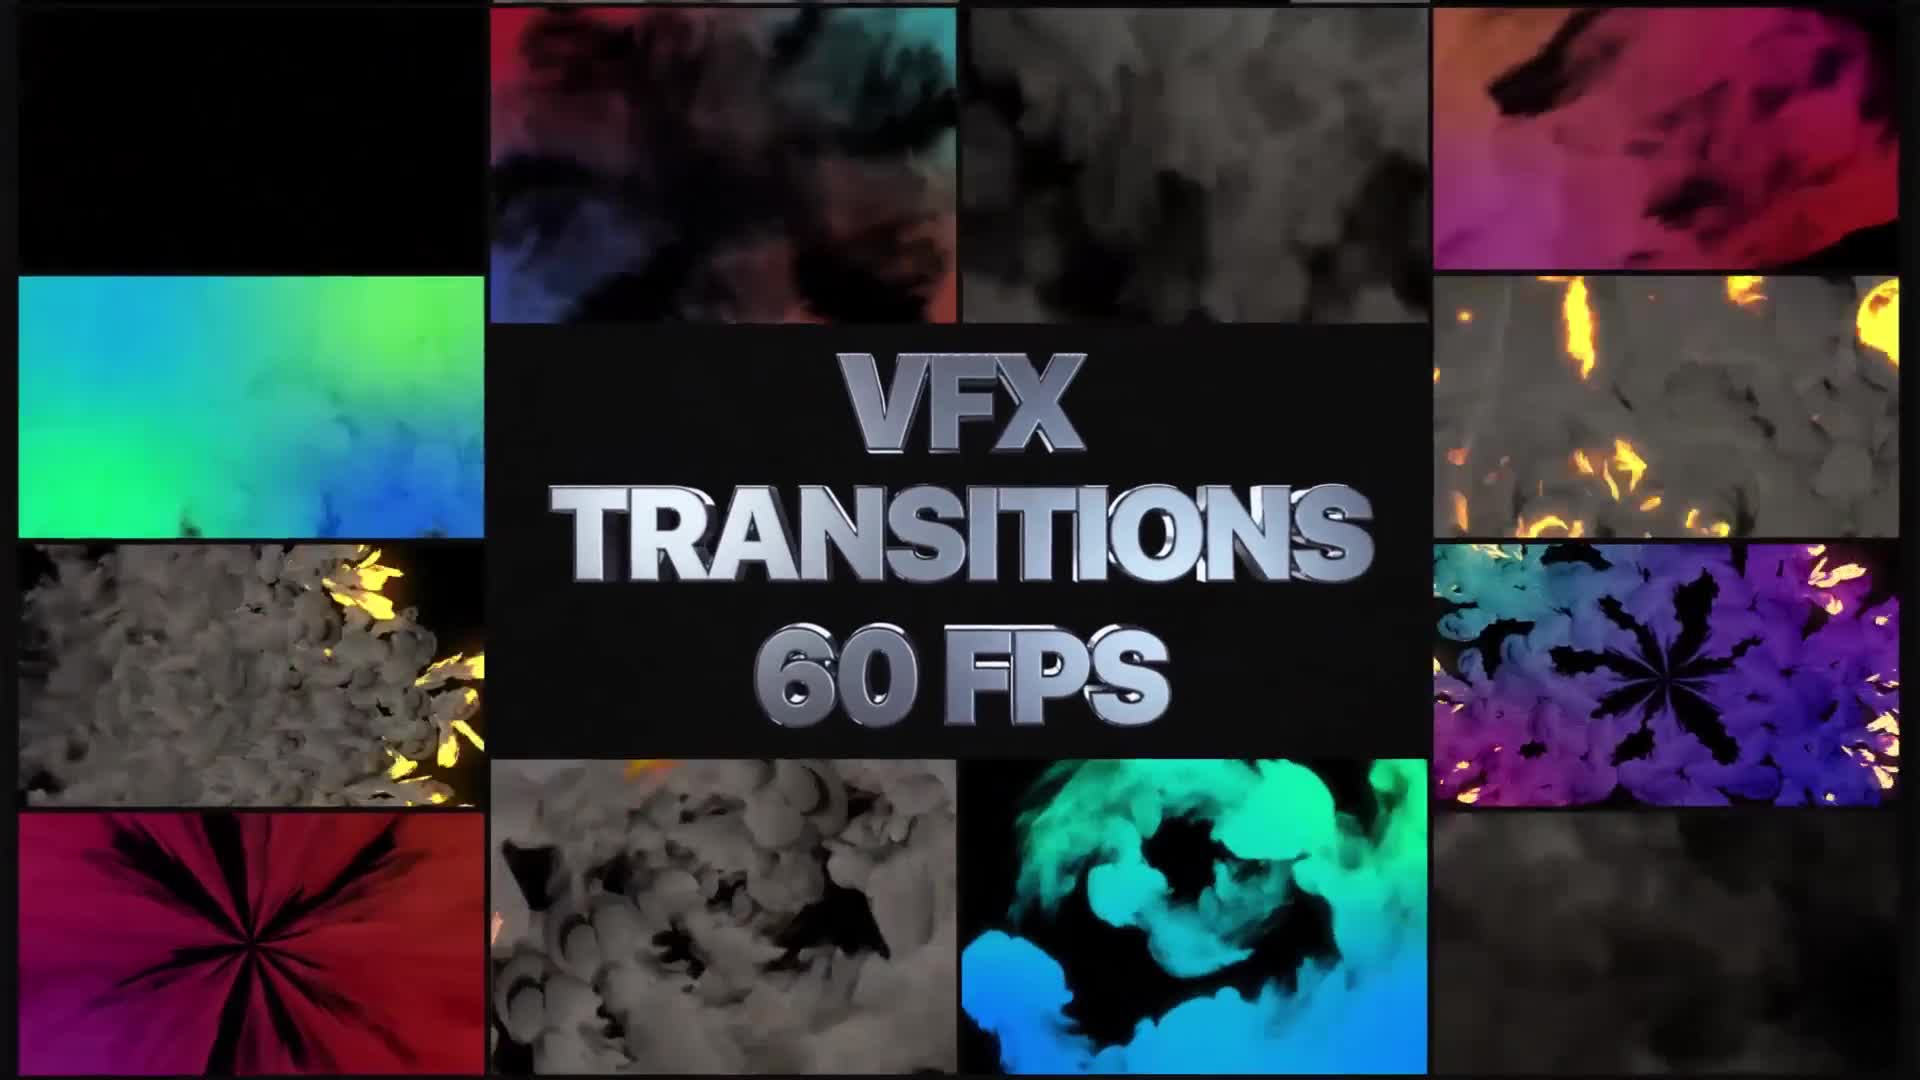 VFX Transitions | Premiere Pro MOGRT Videohive 26407789 Premiere Pro Image 1